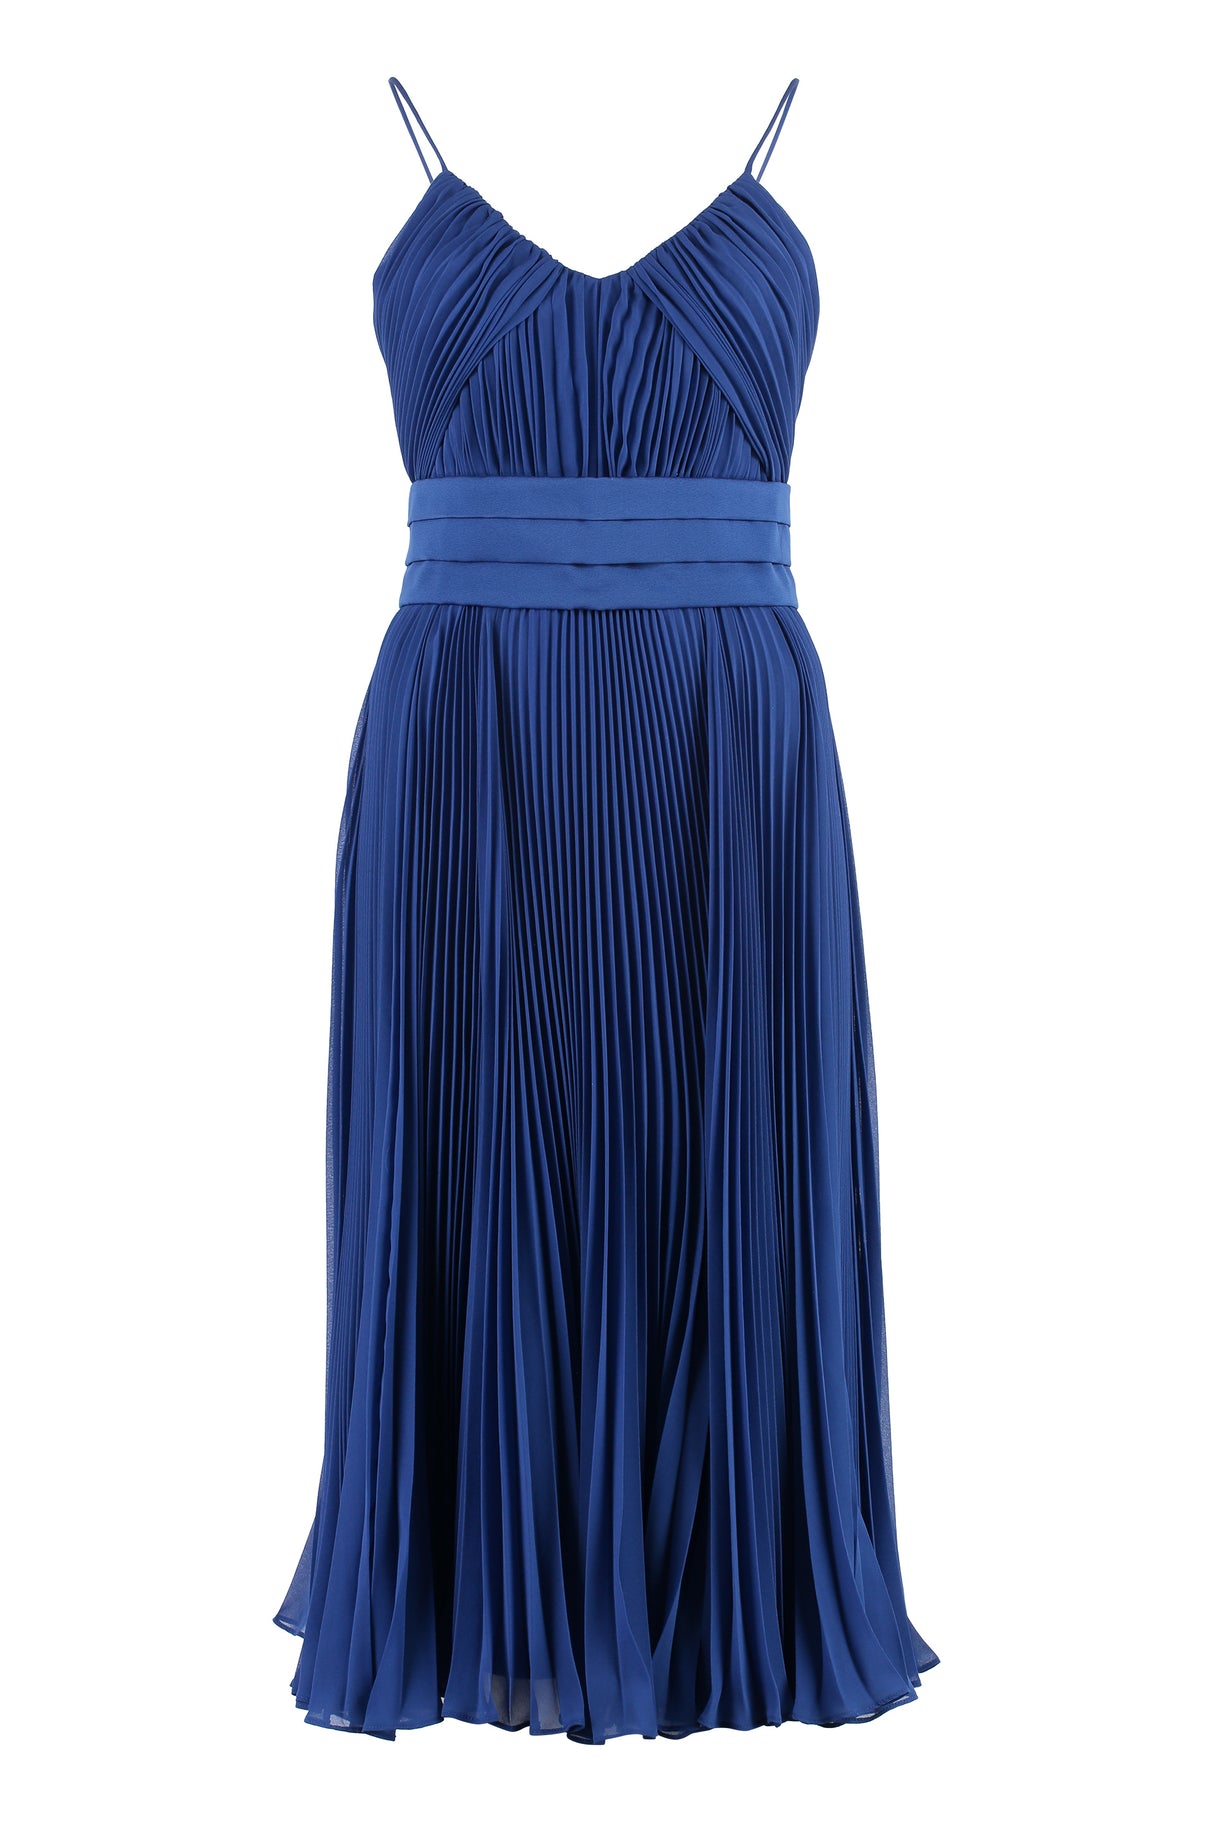 Cross Back Pleated Dress in Stylish Blue for Women